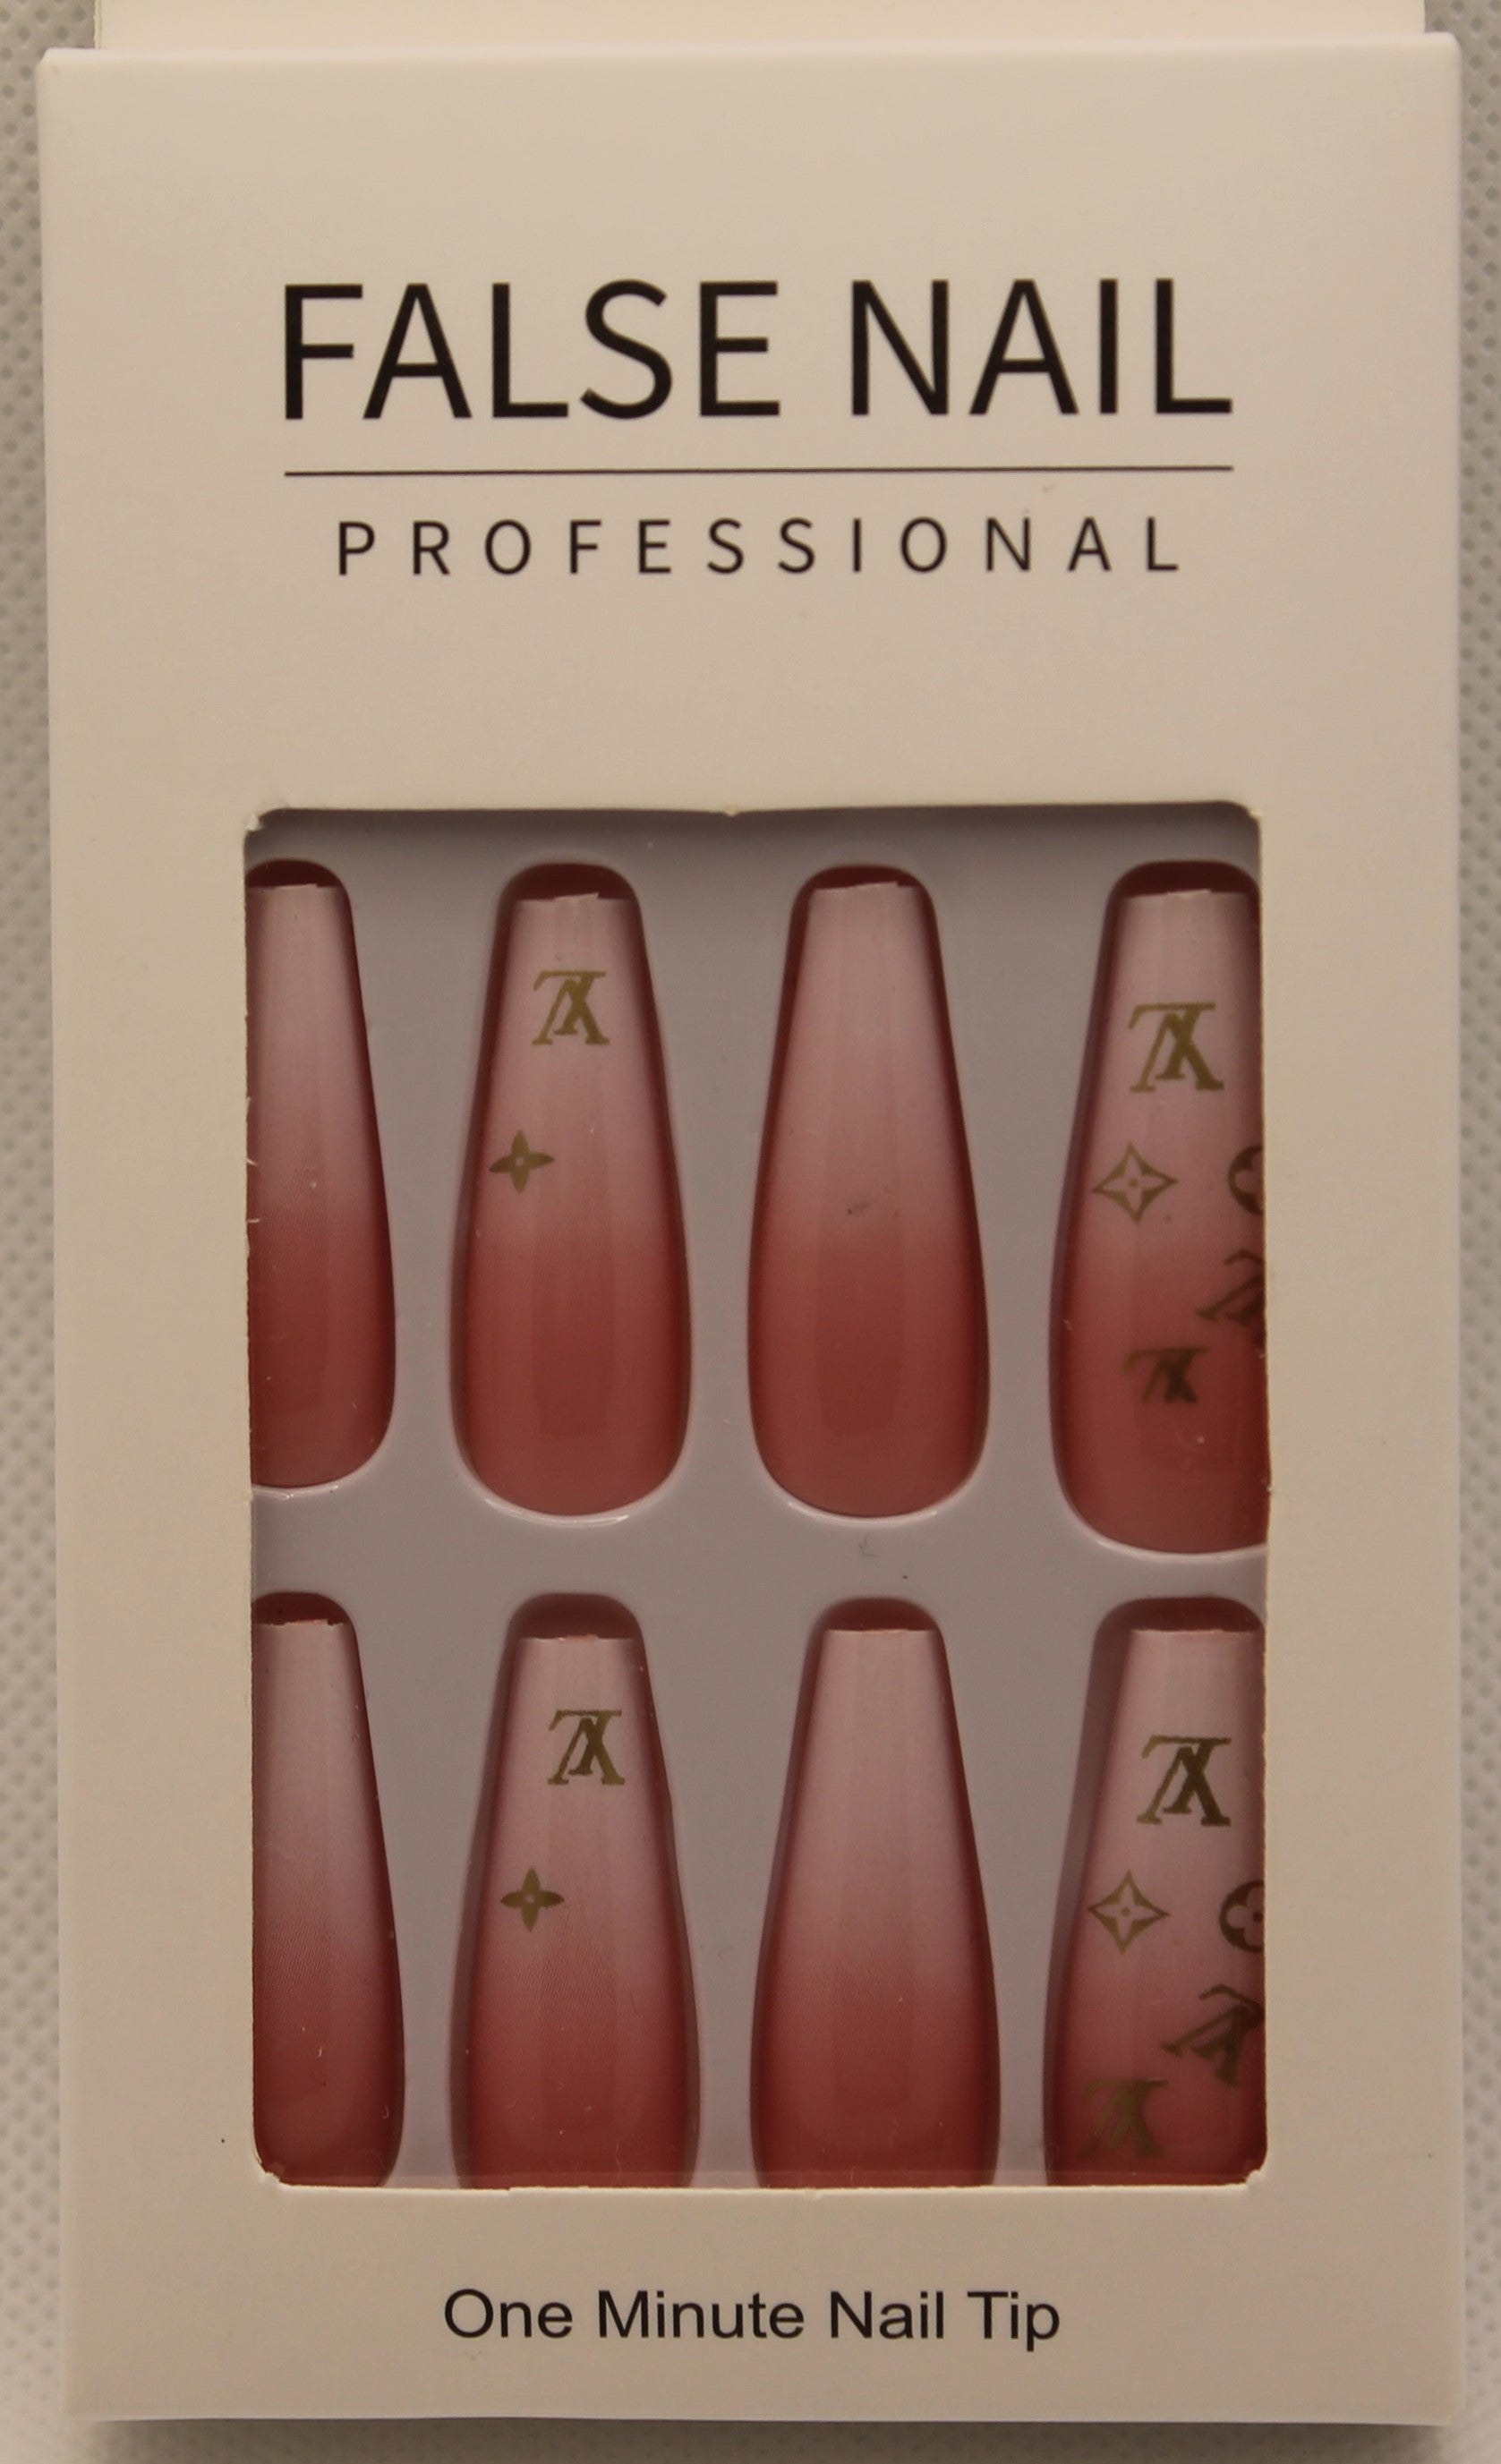 Pro Nails - Louis Vuitton nails!